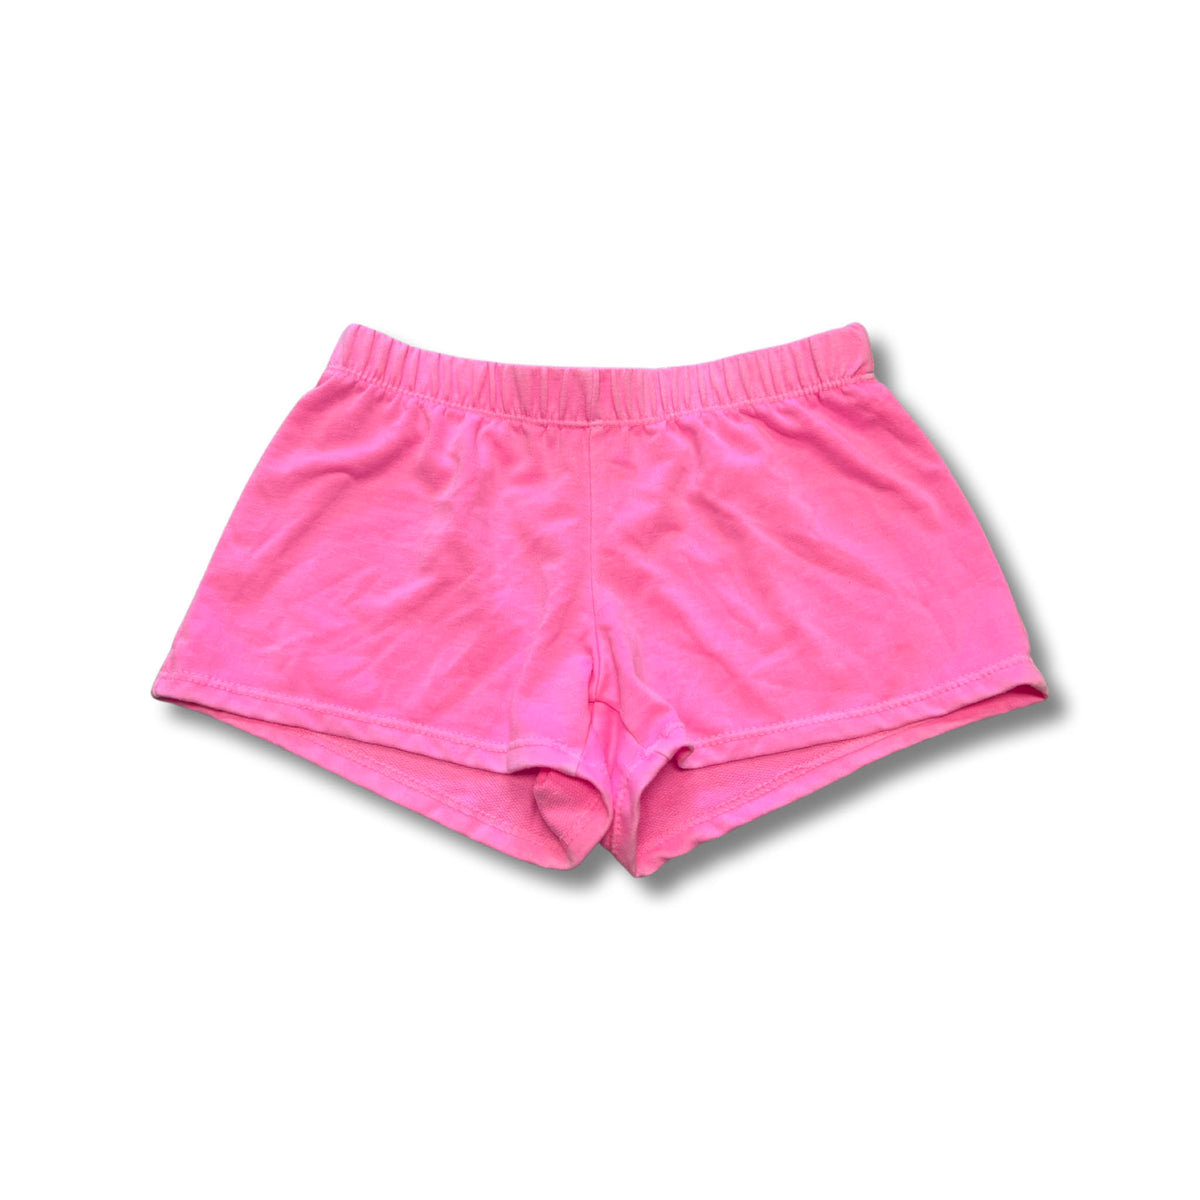 Firehouse - Girls - Neon Pink Fleece Short